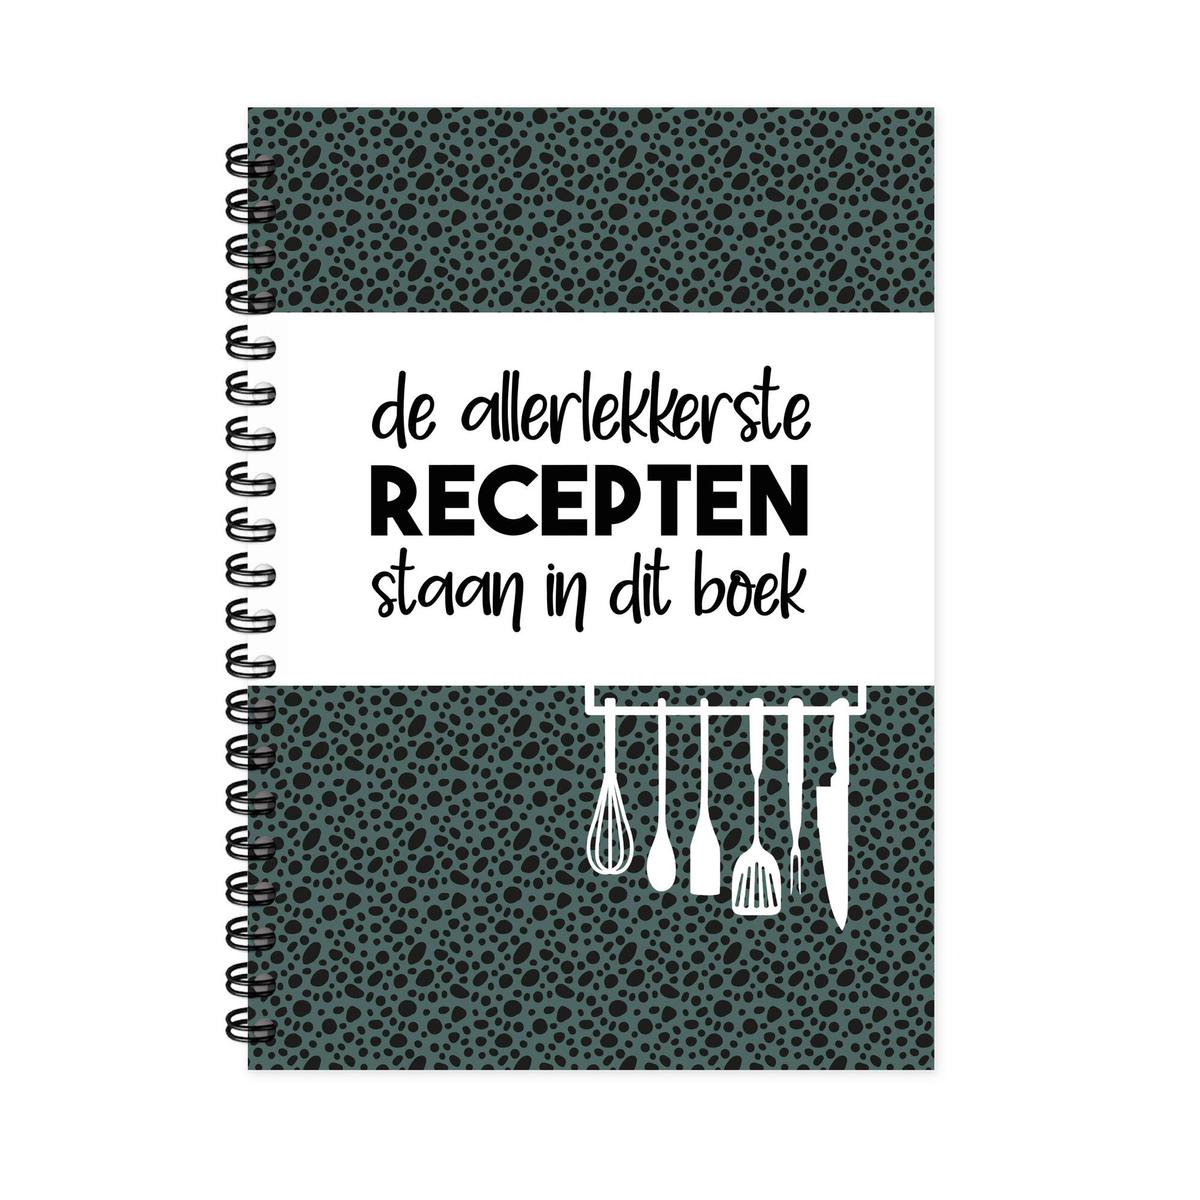 Receptenboek invulboek - Recepten verzamelboek met handige inhoudsopgave - verjaardagscadeau man vrouw - Tip - BBQ - barbecue - Hippekaartjeswinkel